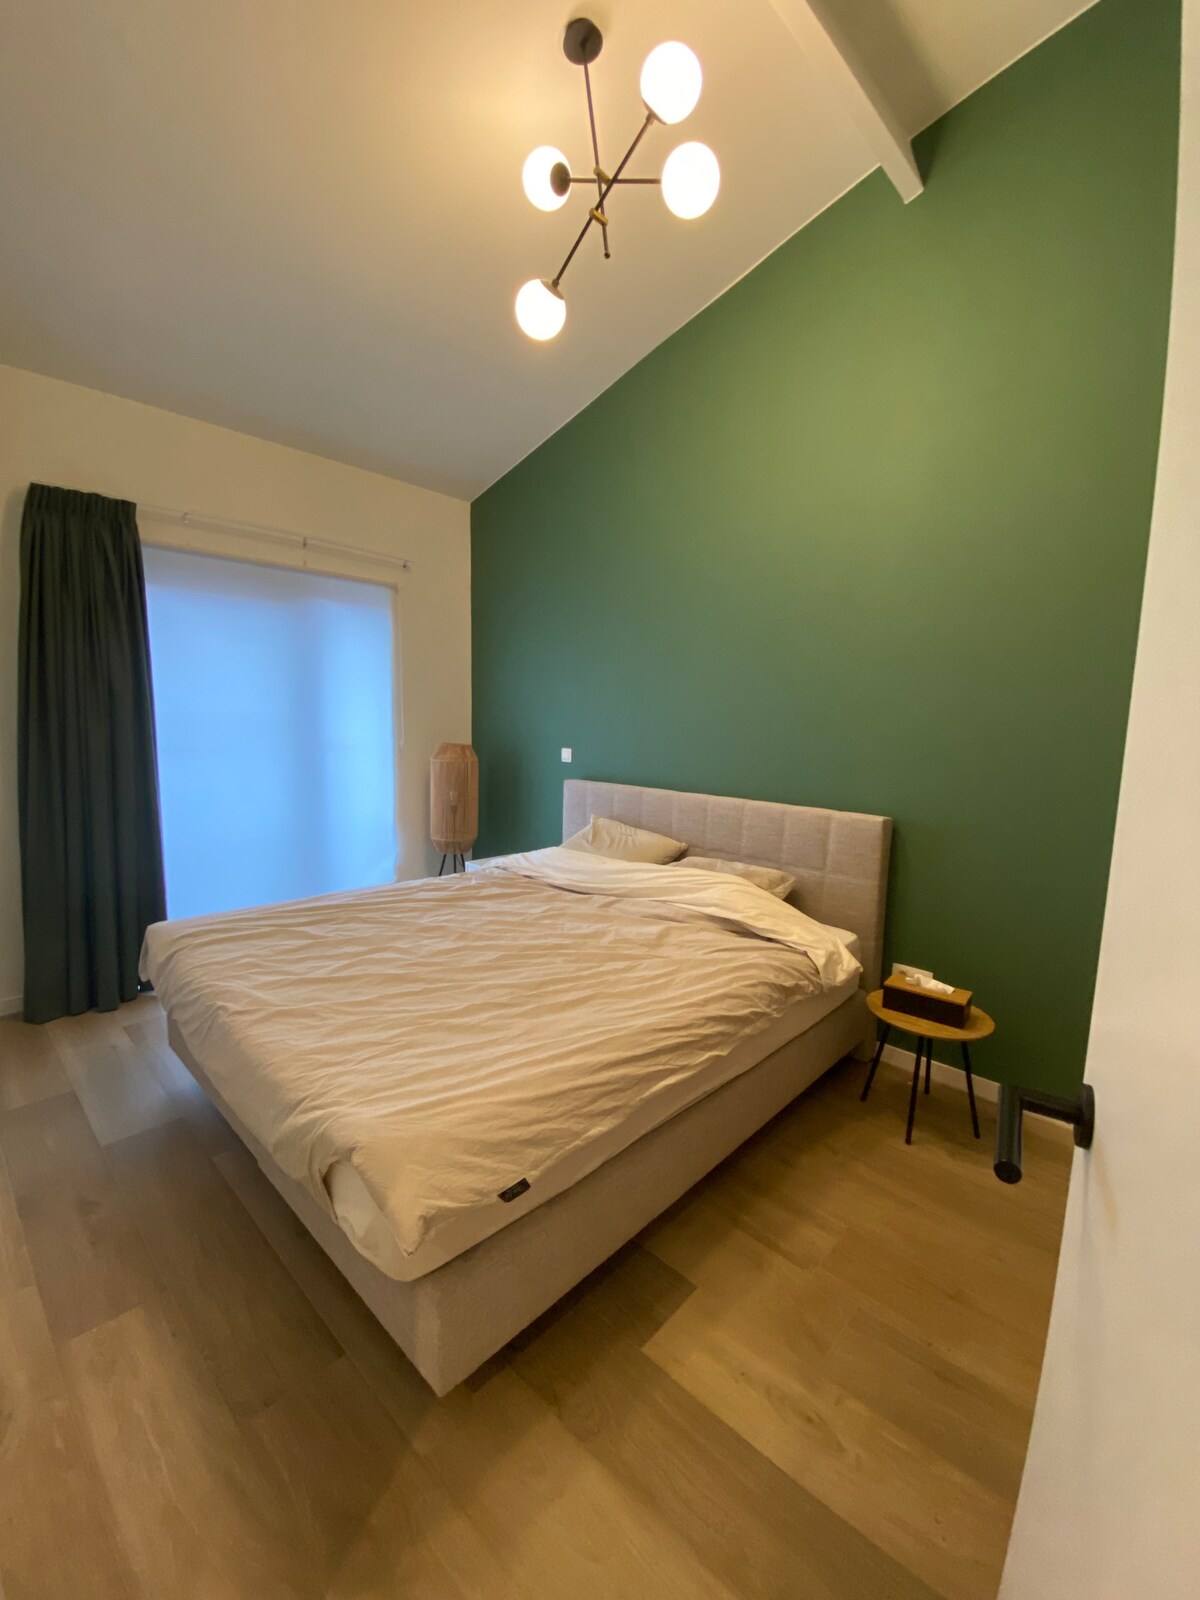 Luxury, cozy apartment near Leuven